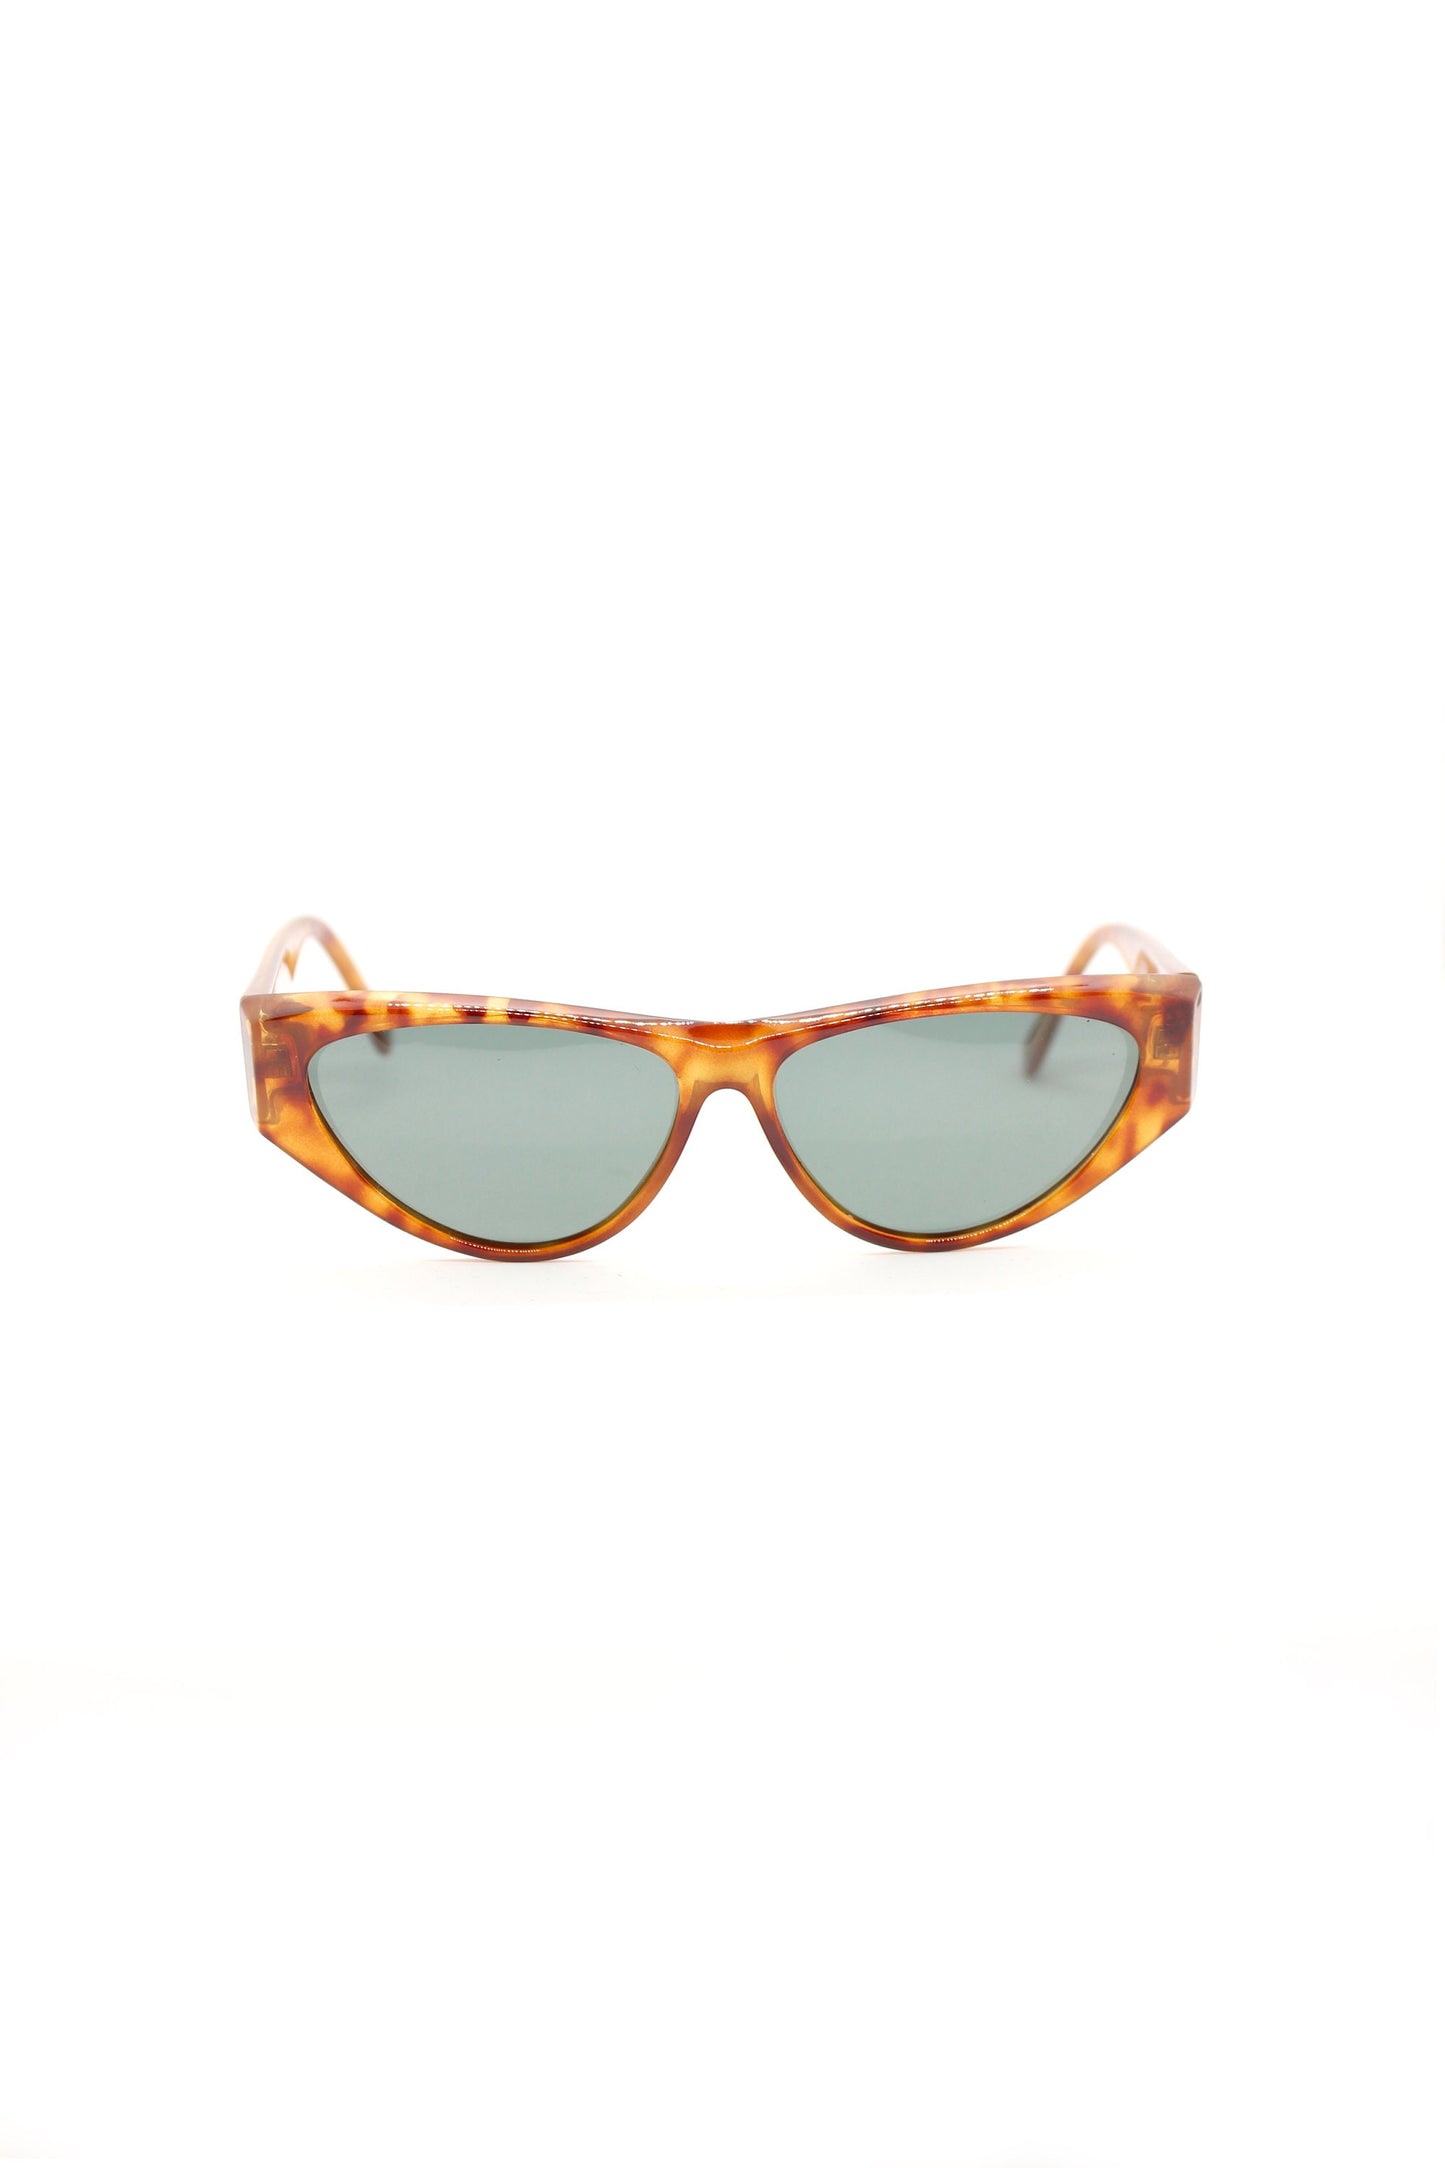 Vintage POLAROID Cat eye tortoise acetate NEW VINTAGE sunglasses